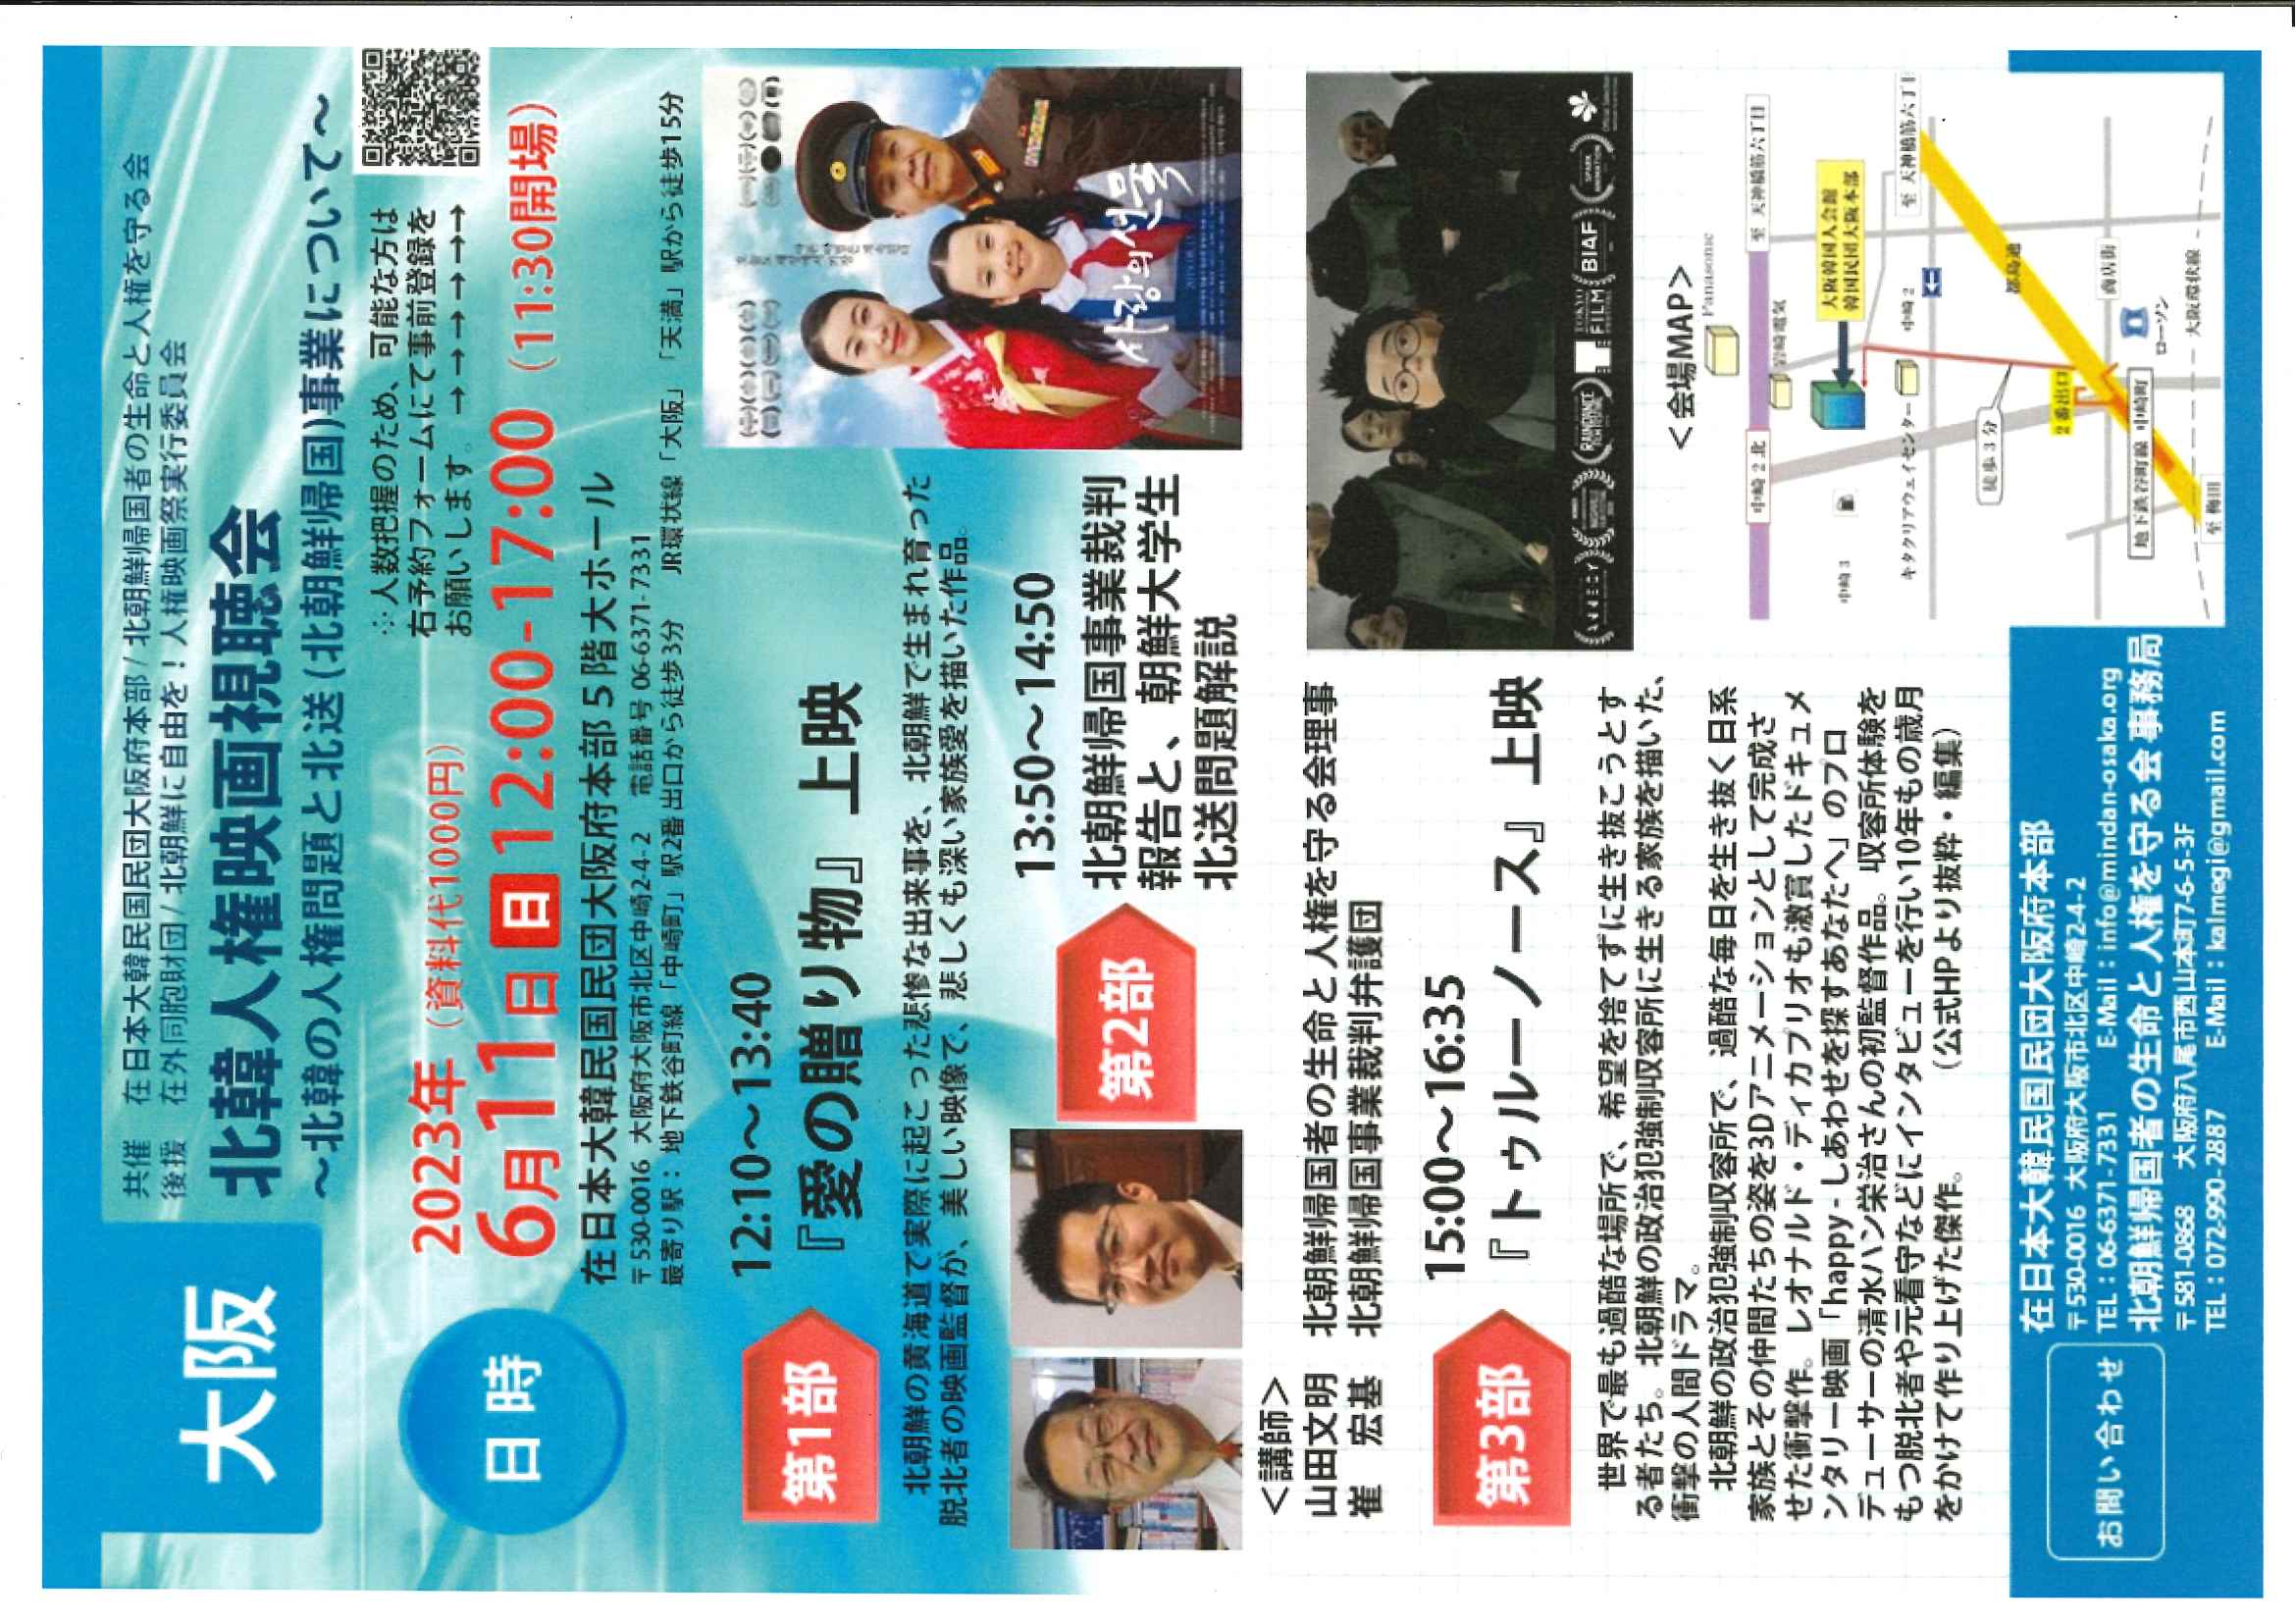 6月11日 北韓人権映画視聴会